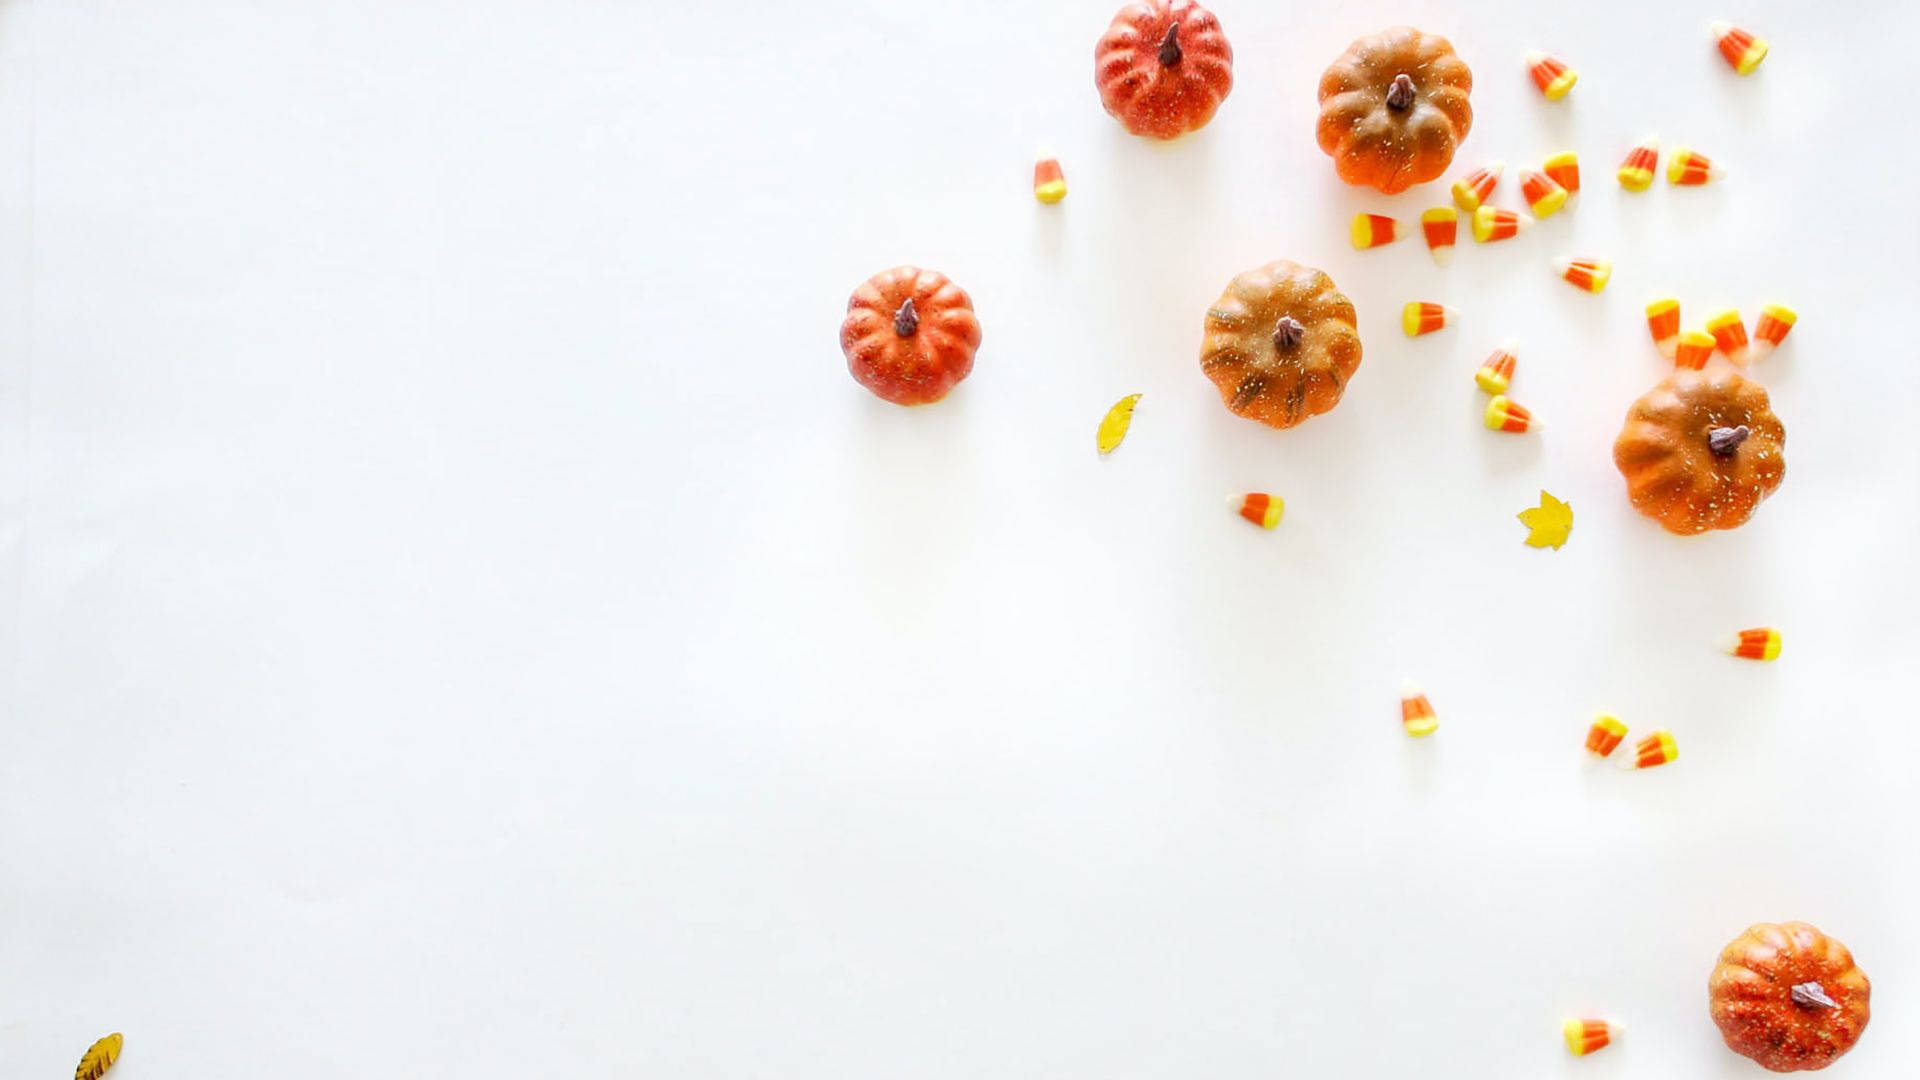 Estéticade Halloween Para Pc Con Calabazas Naranjas. Fondo de pantalla